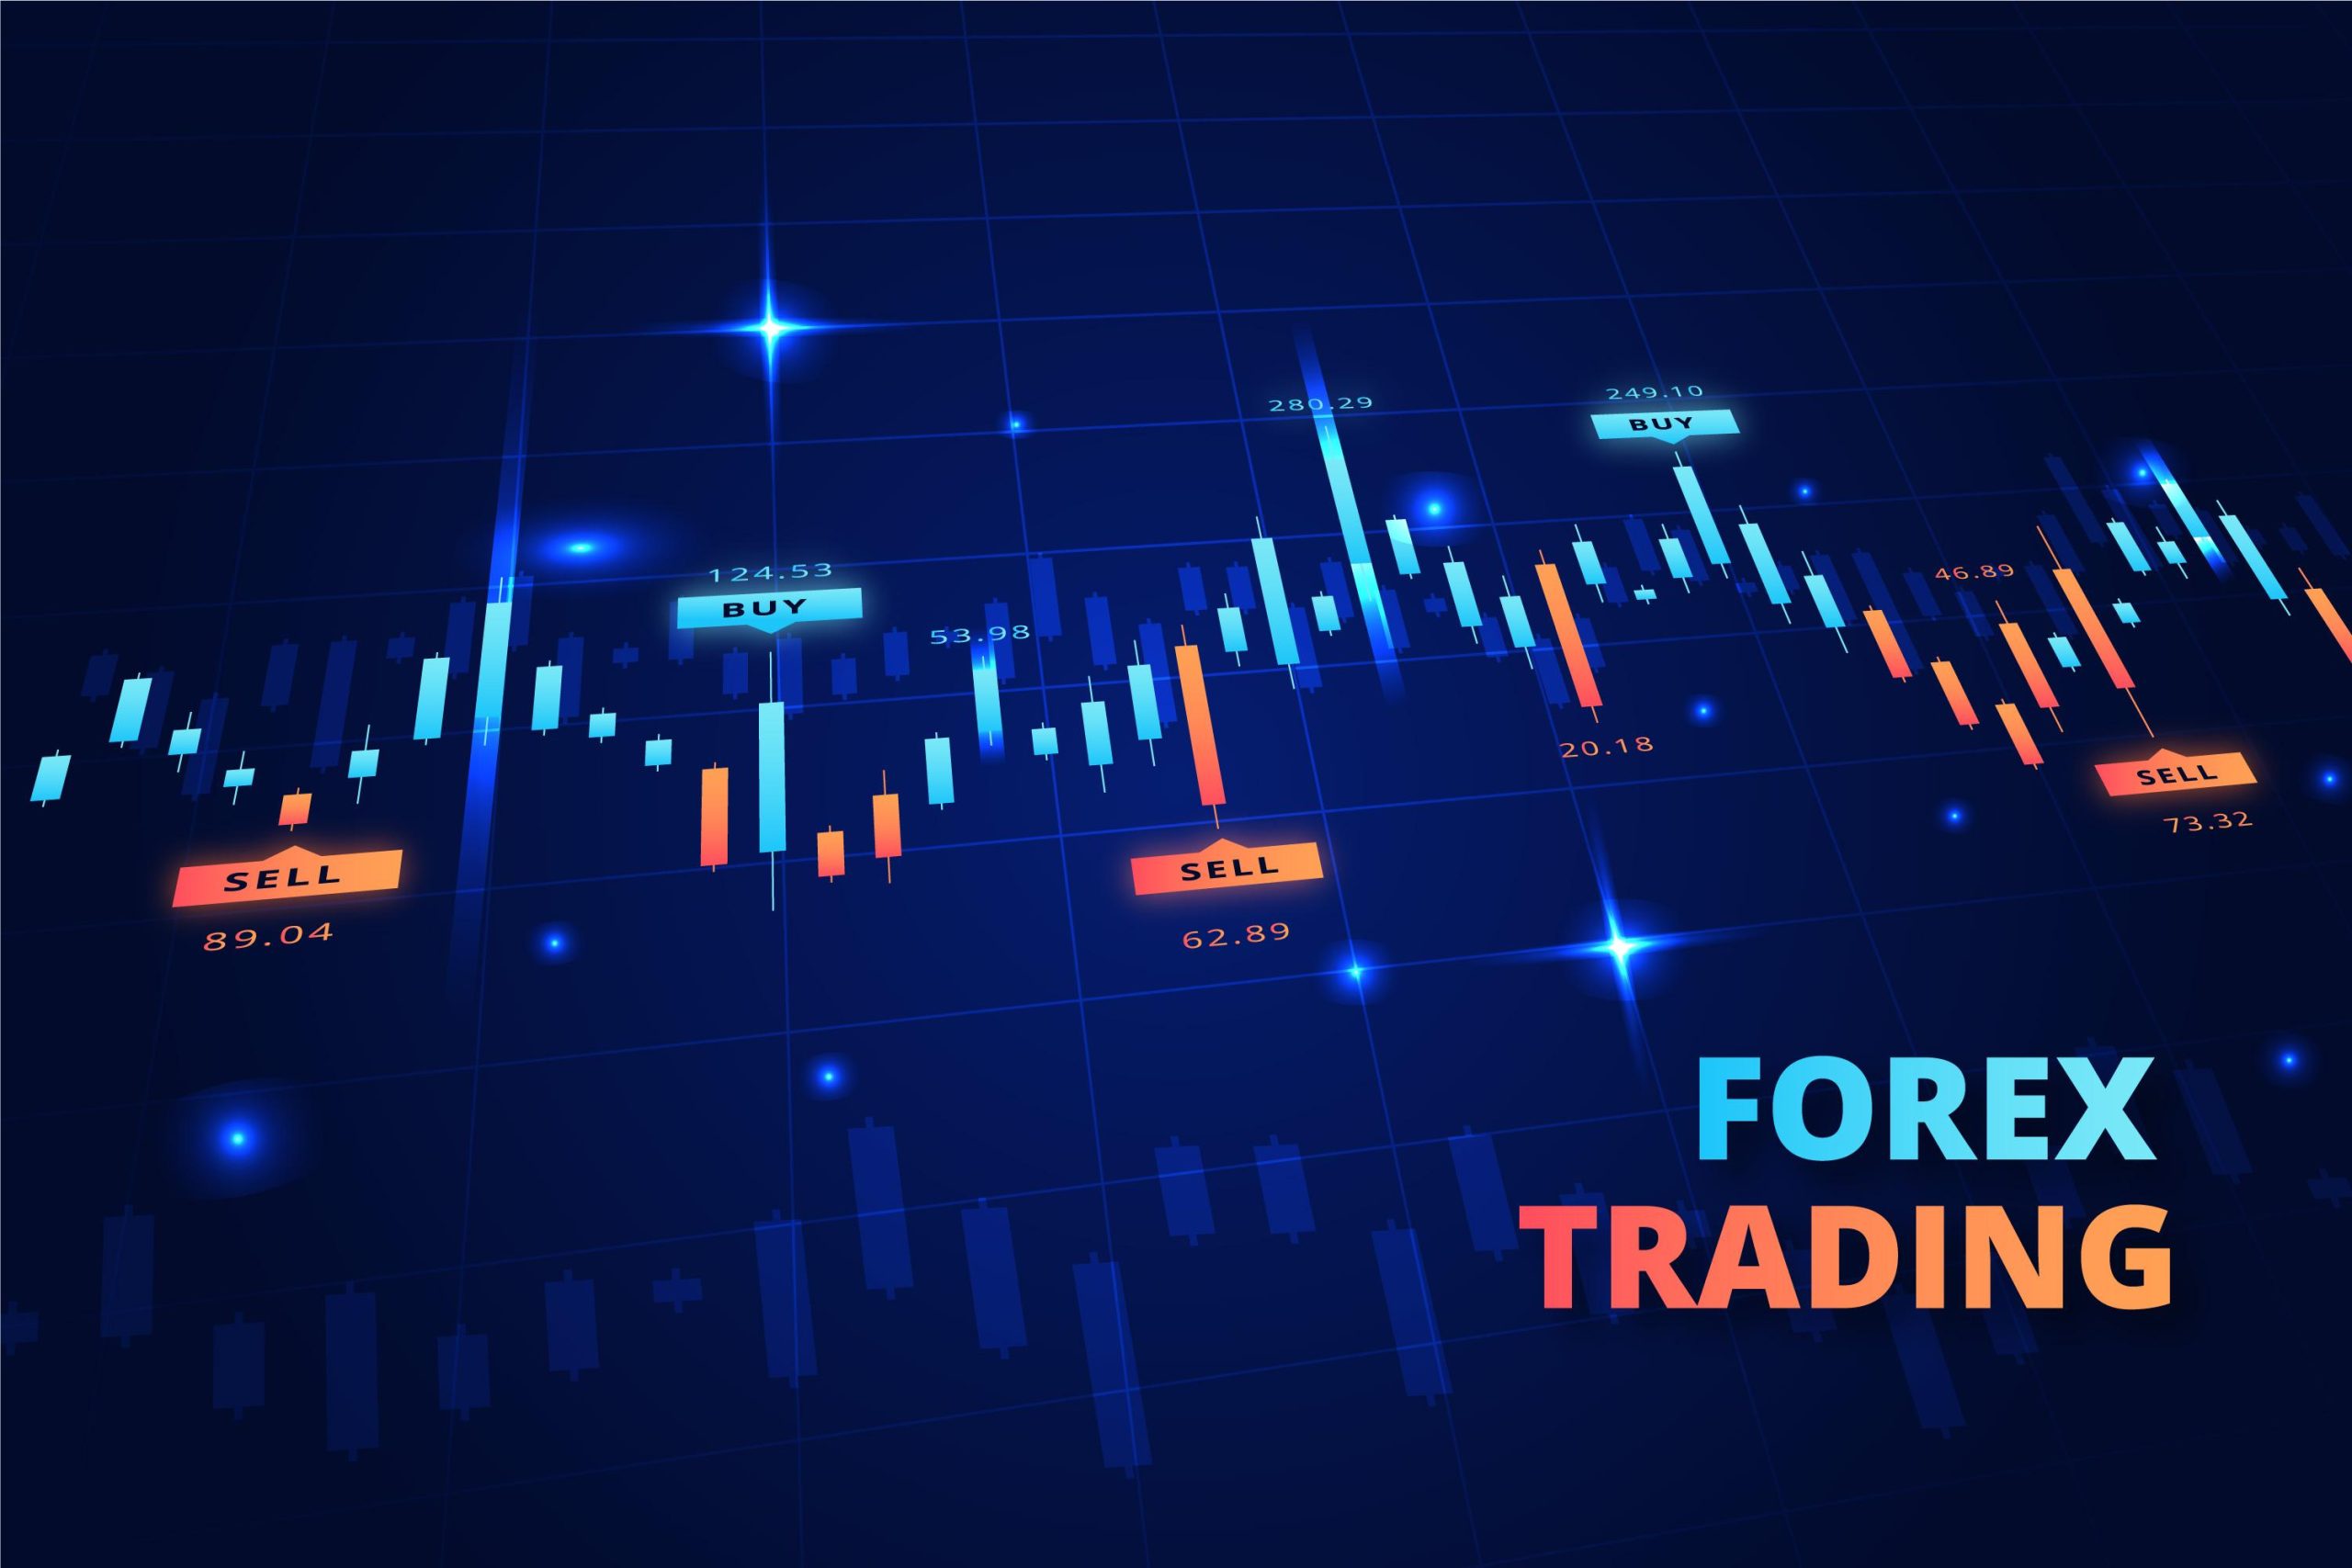 Trading Forex mang lợi nhuận gì cho các trader?